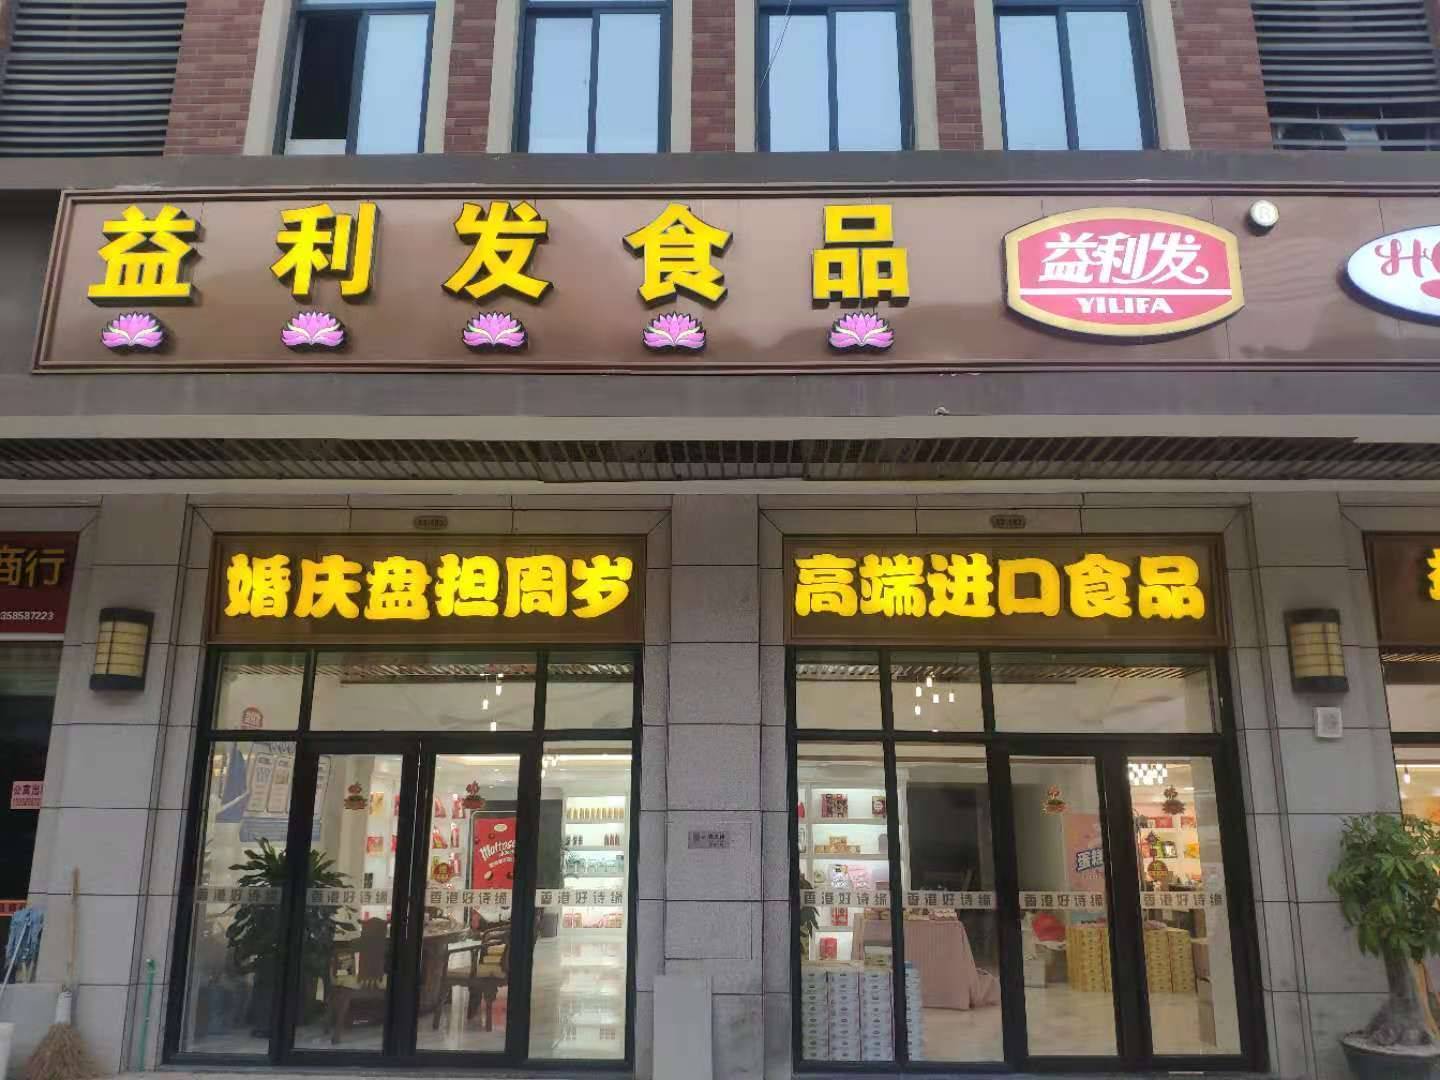   Jinjiang Yilifa Food Co., Ltd